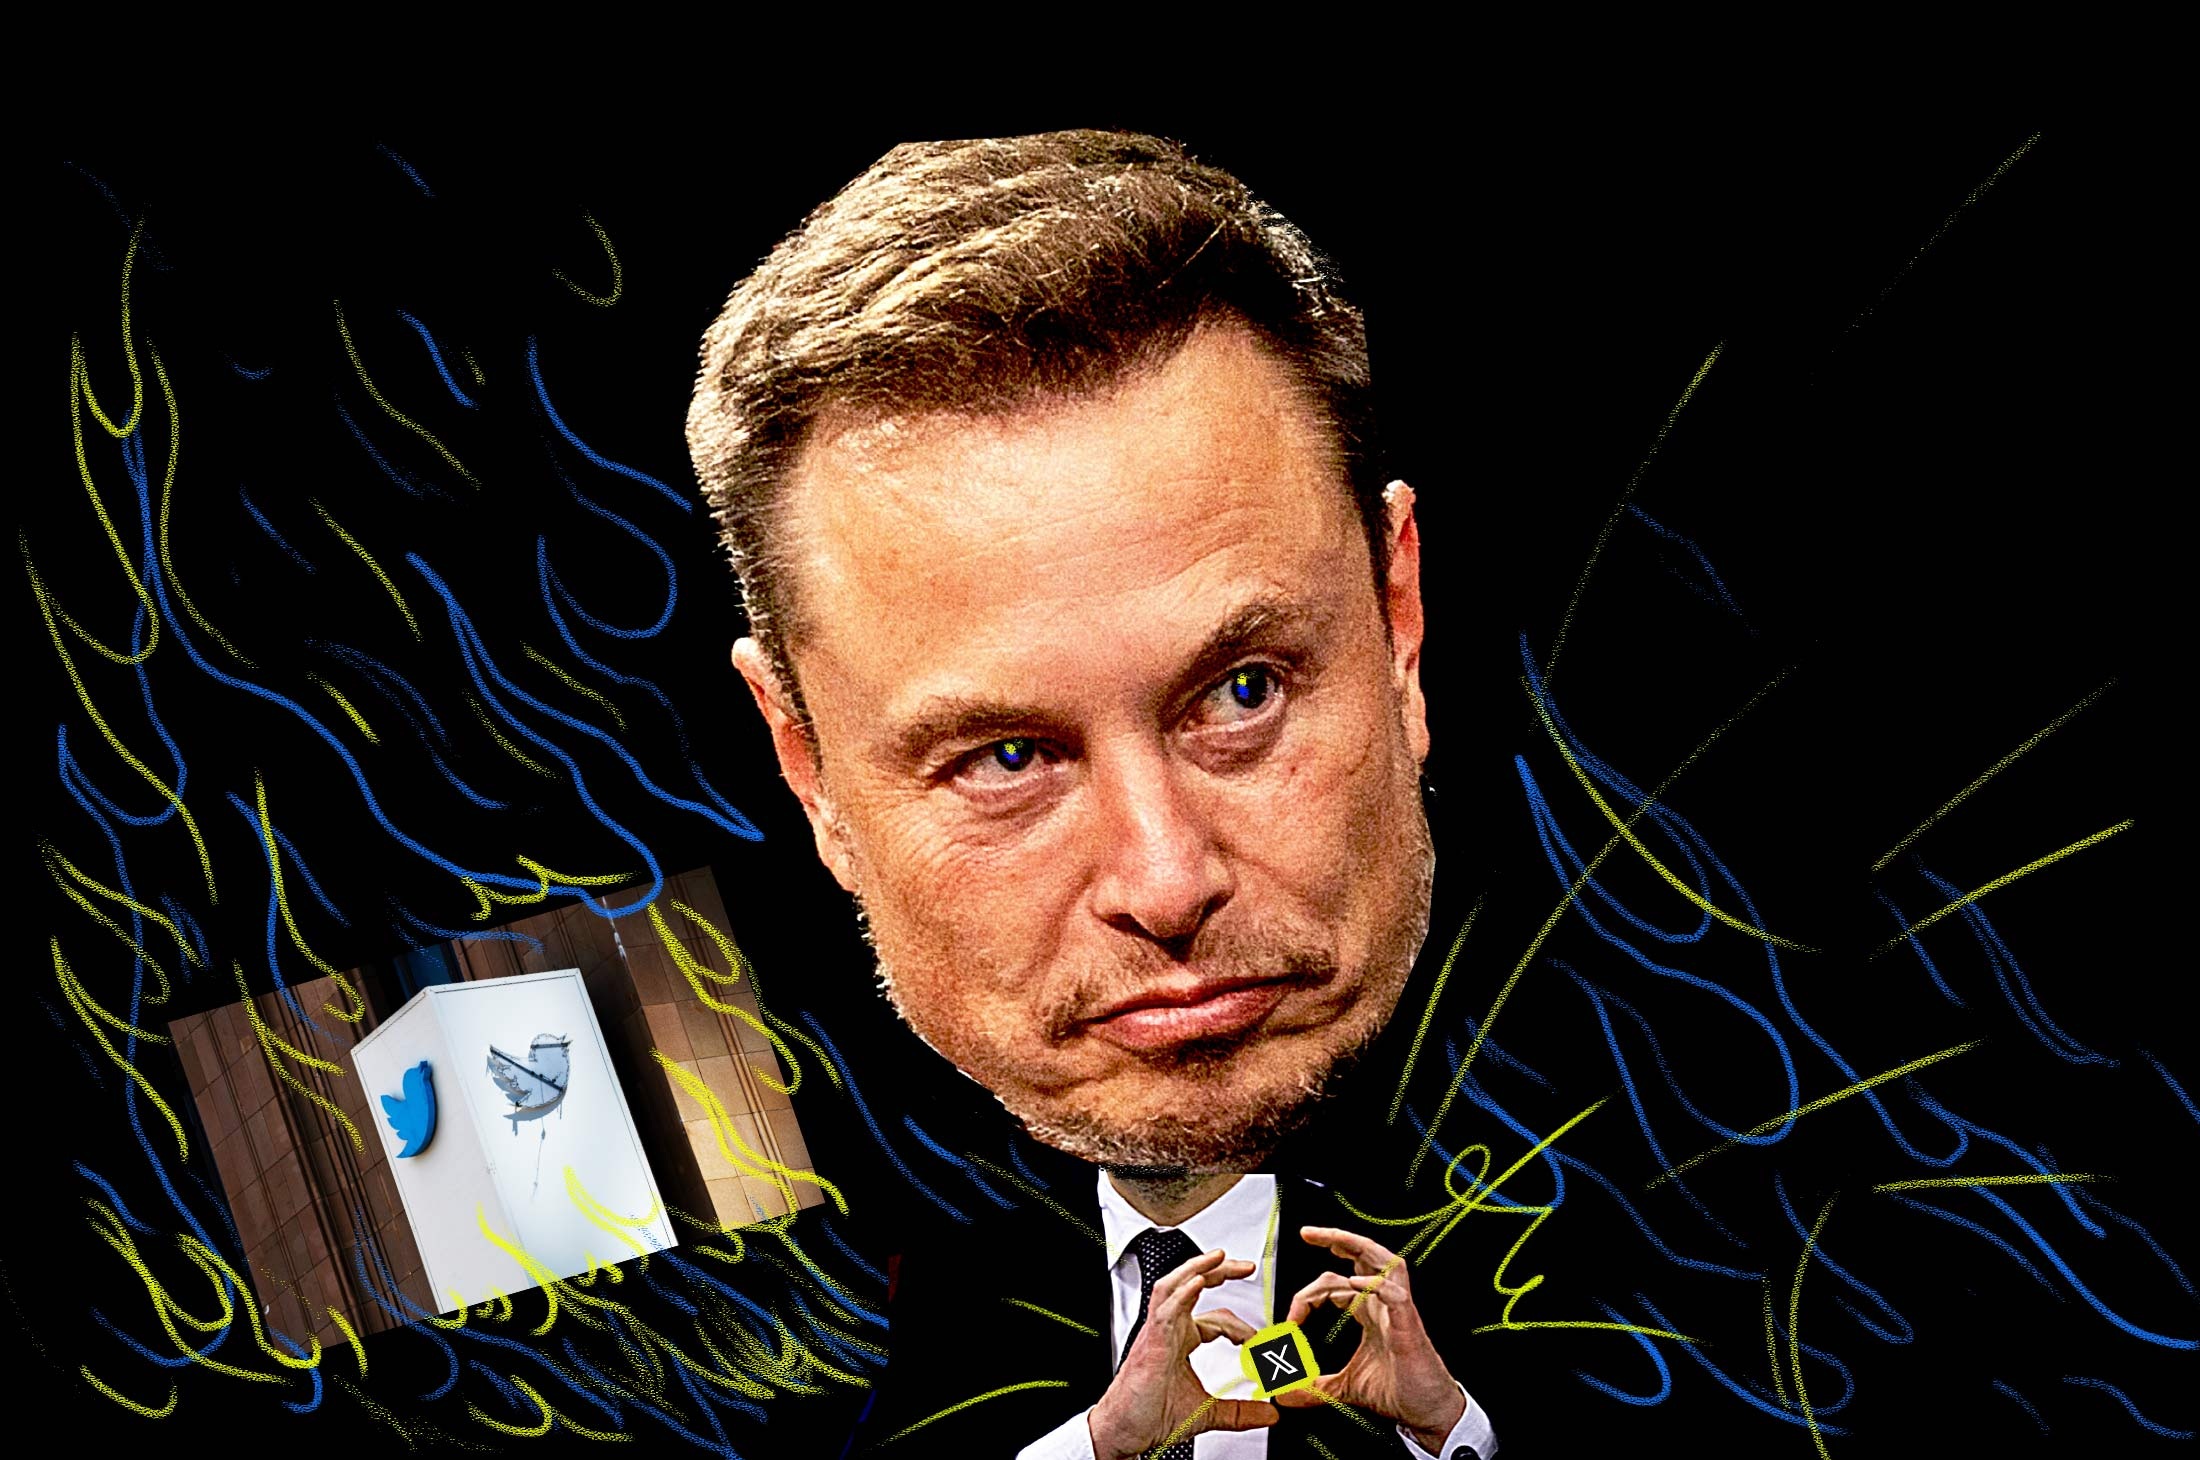 Bất chấp những "lời hoa bướm" của Elon Musk, X đang ở tình cảnh khủng hoảng